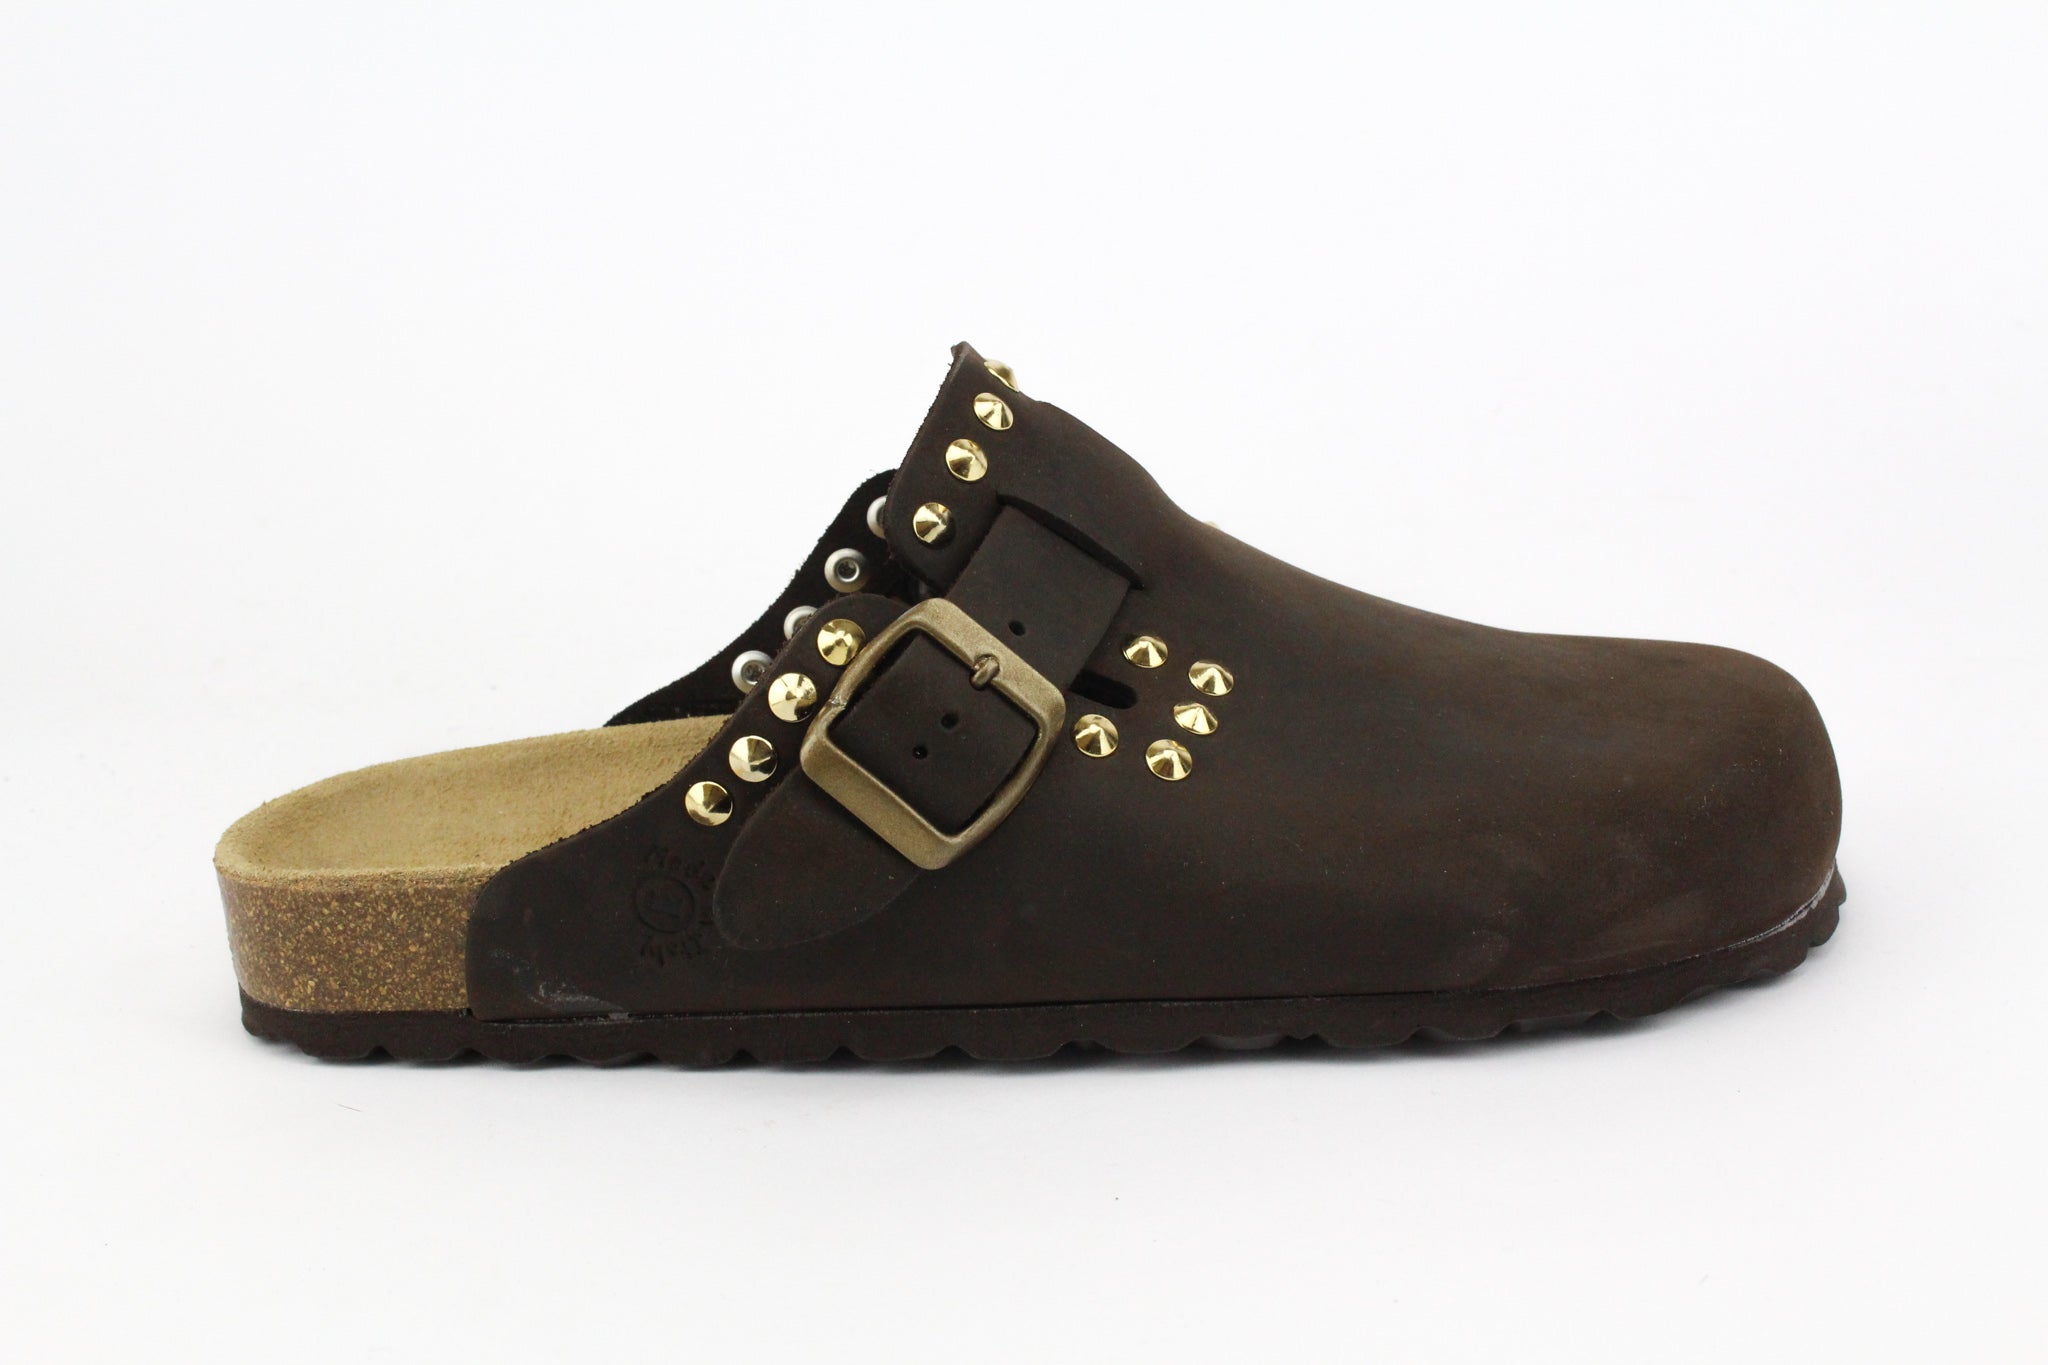 Gold Studded Leather Sabot Sandals